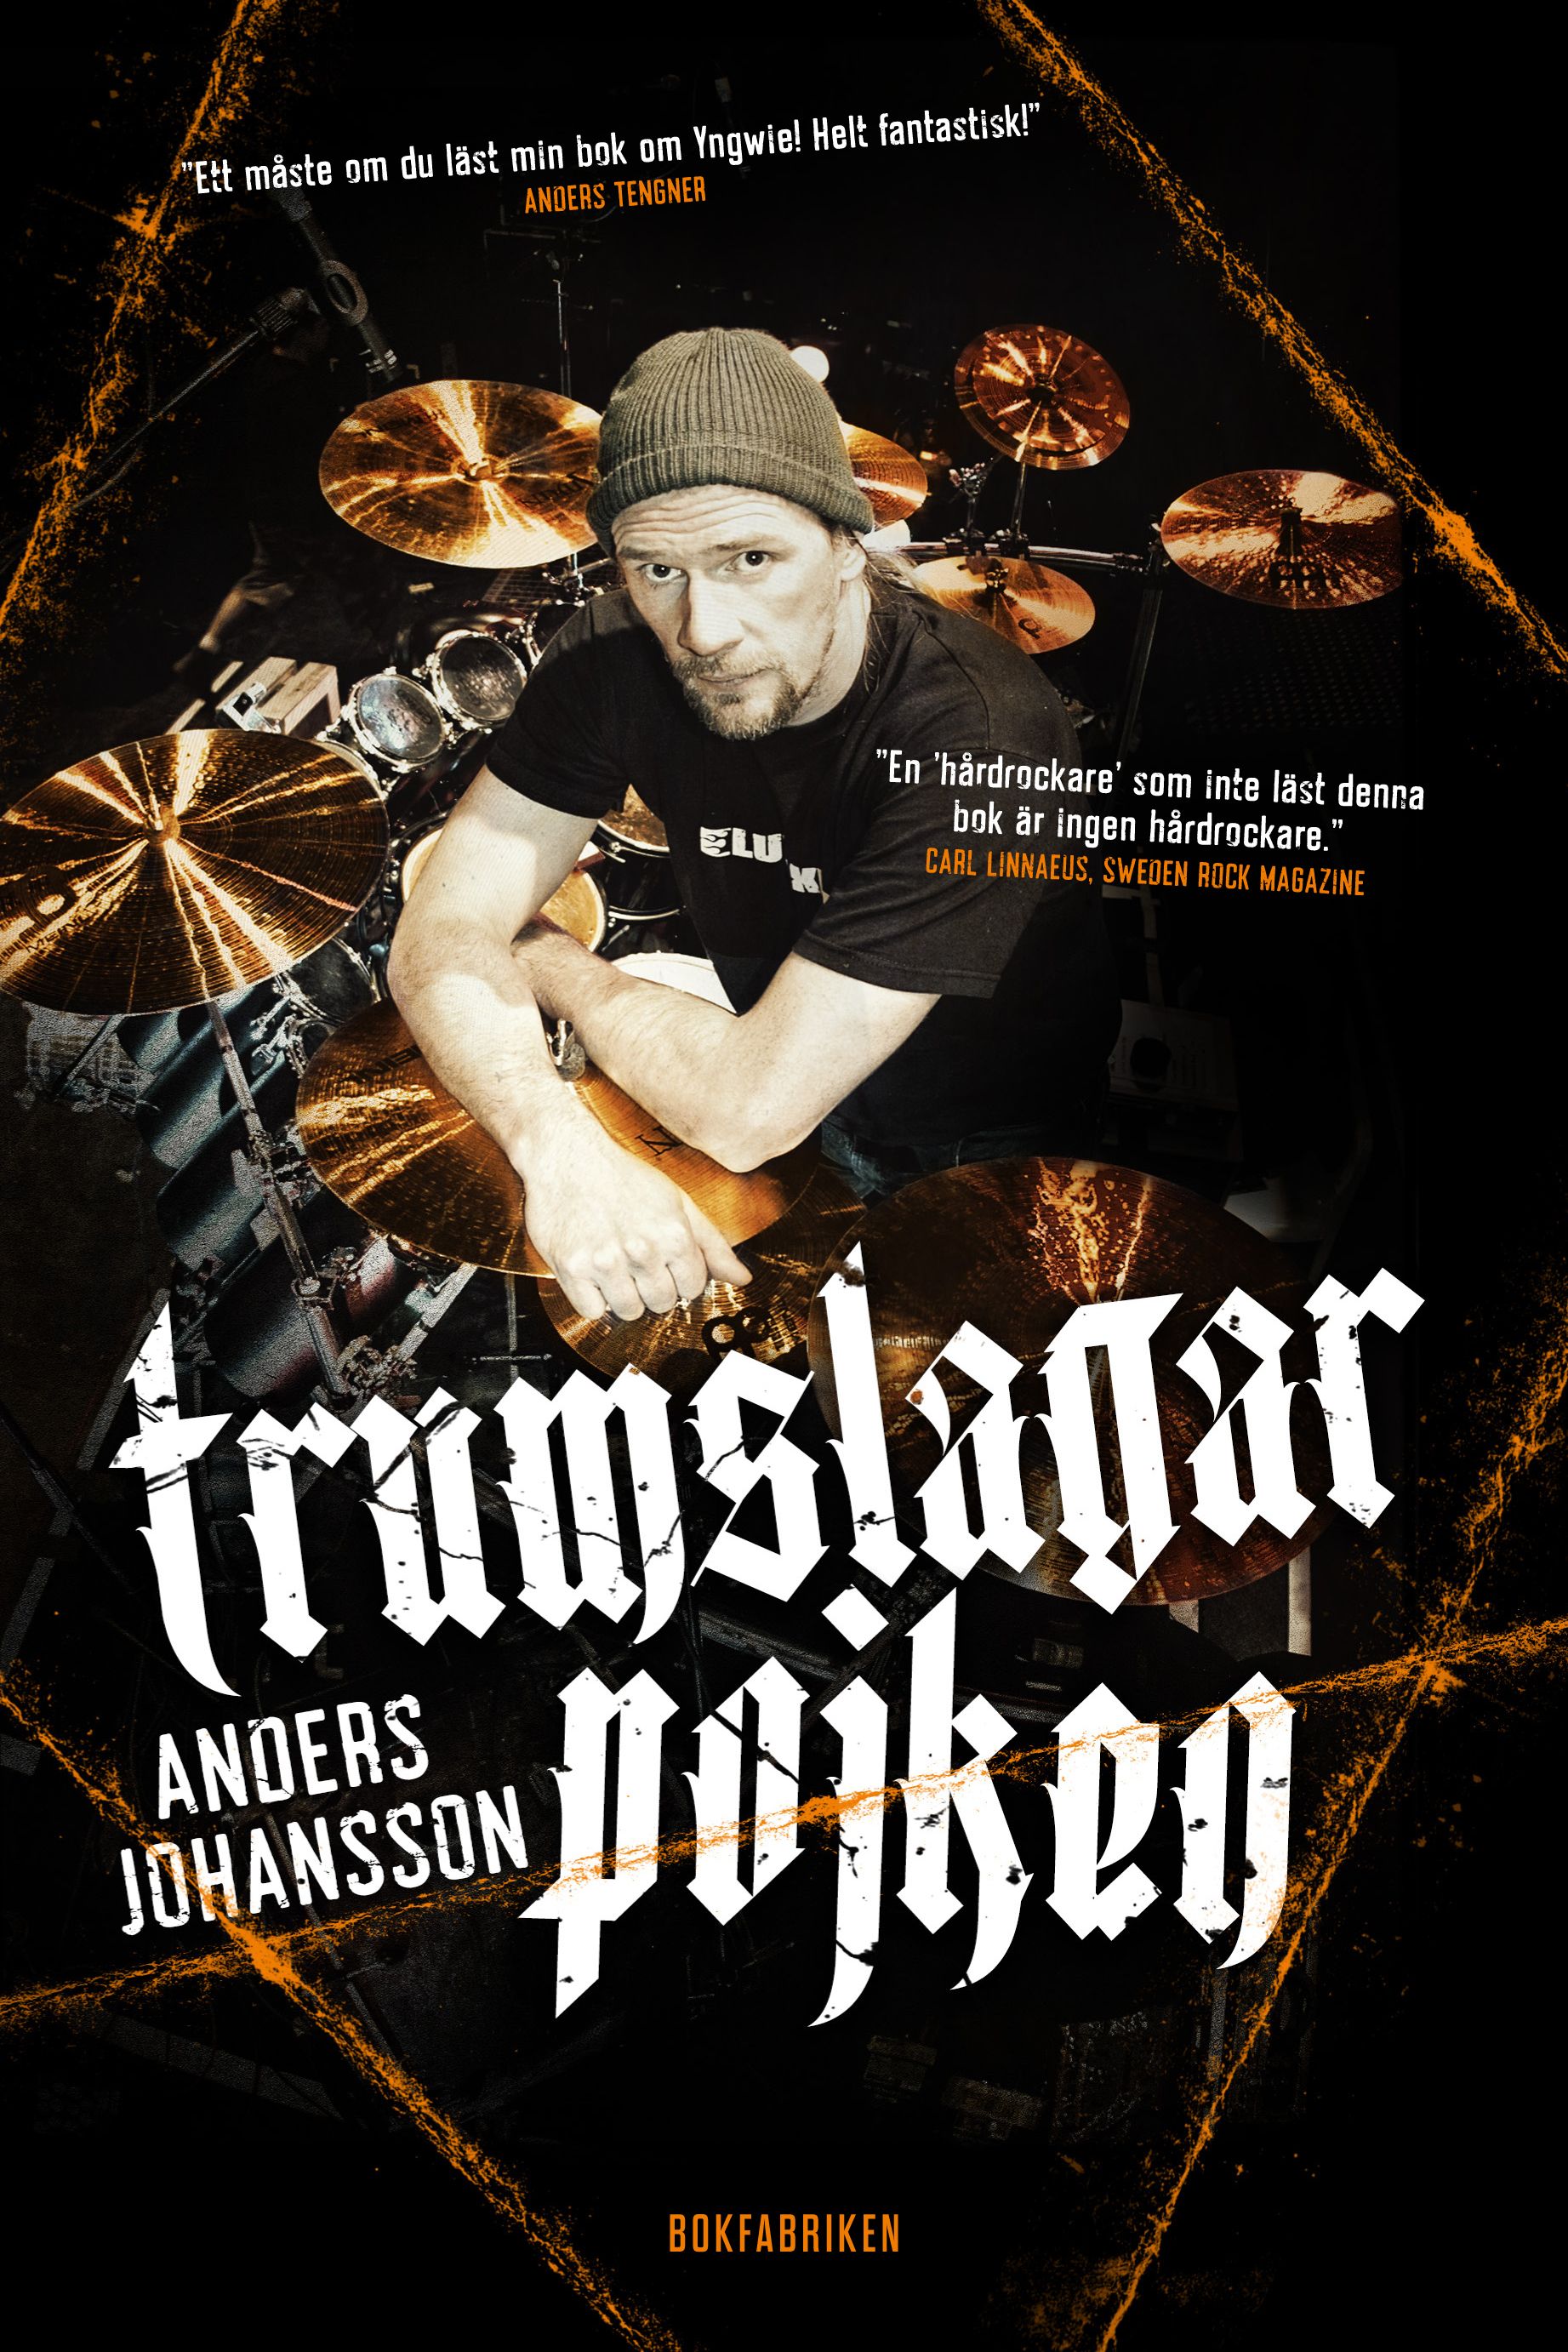 Trumslagarpojken, eBook by Anders Johansson